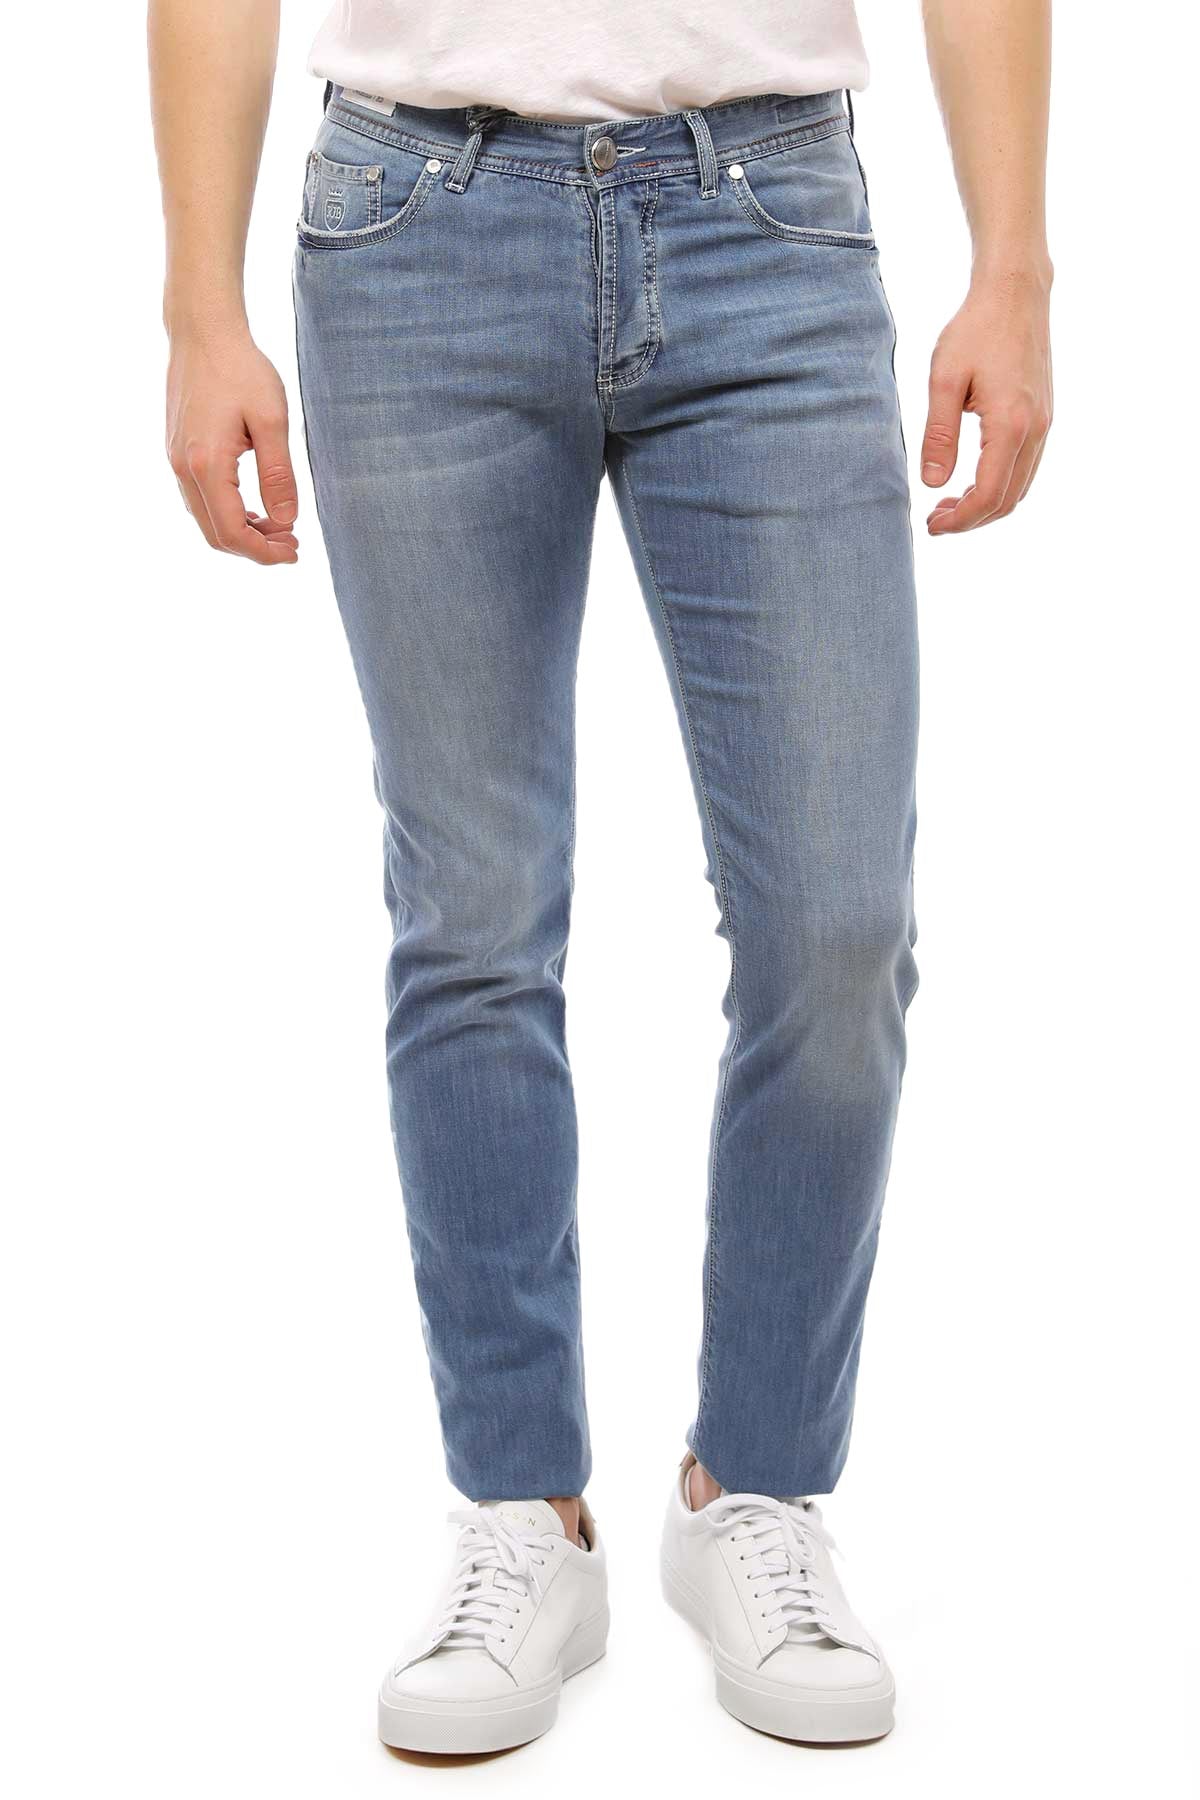 Richard J. Brown Jeans-Libas Trendy Fashion Store